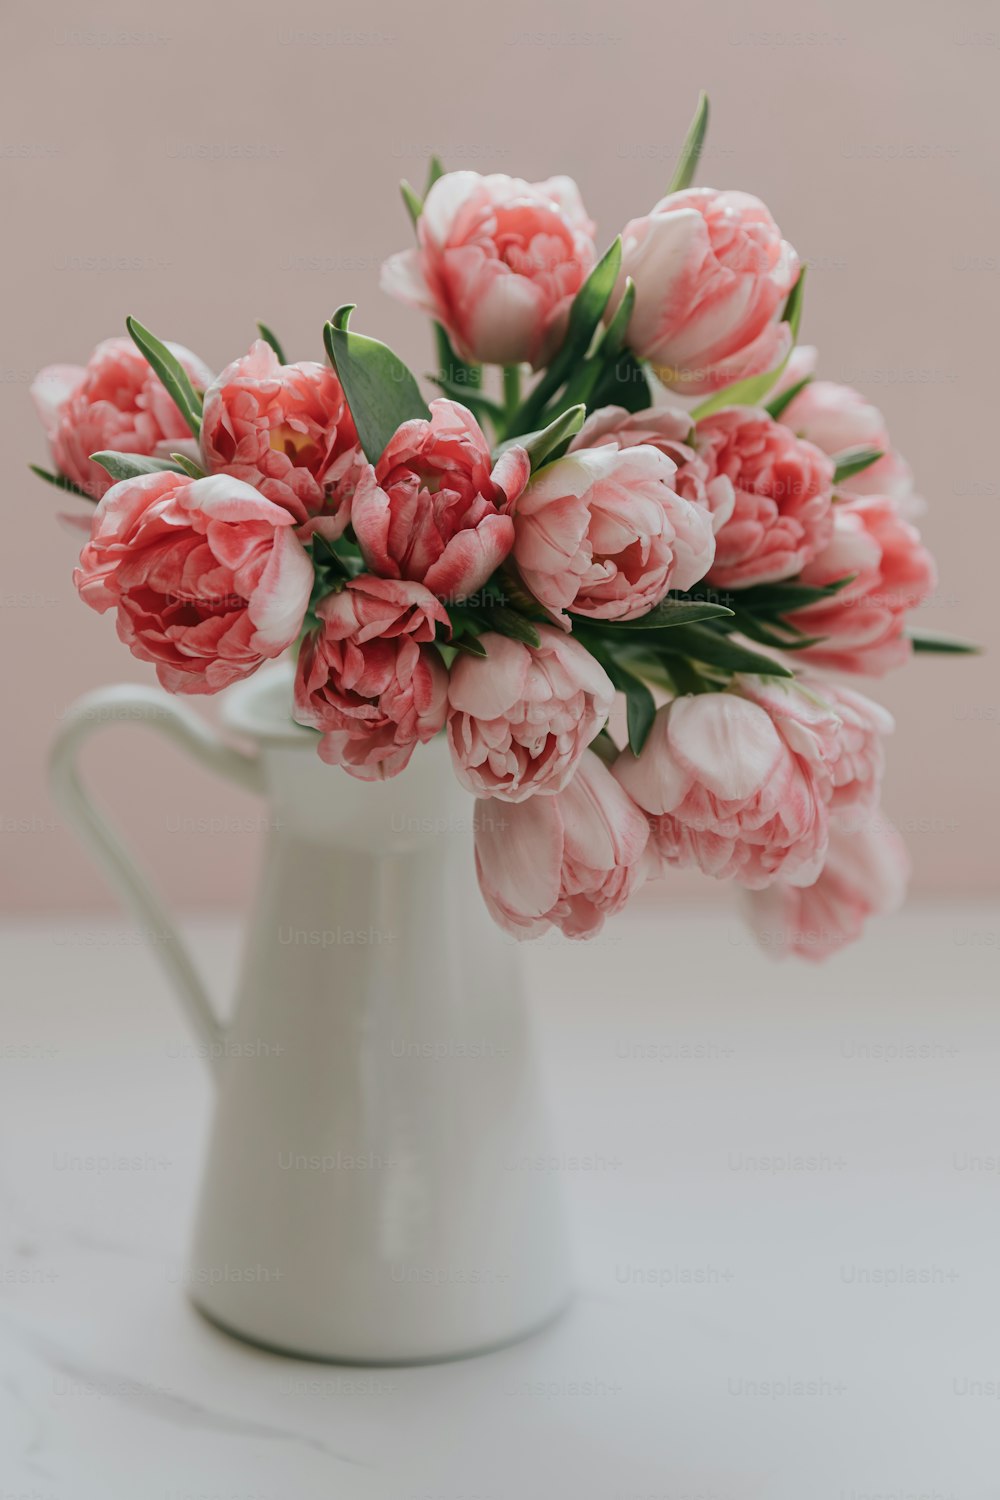 Un jarrón blanco lleno de flores rosadas encima de una mesa